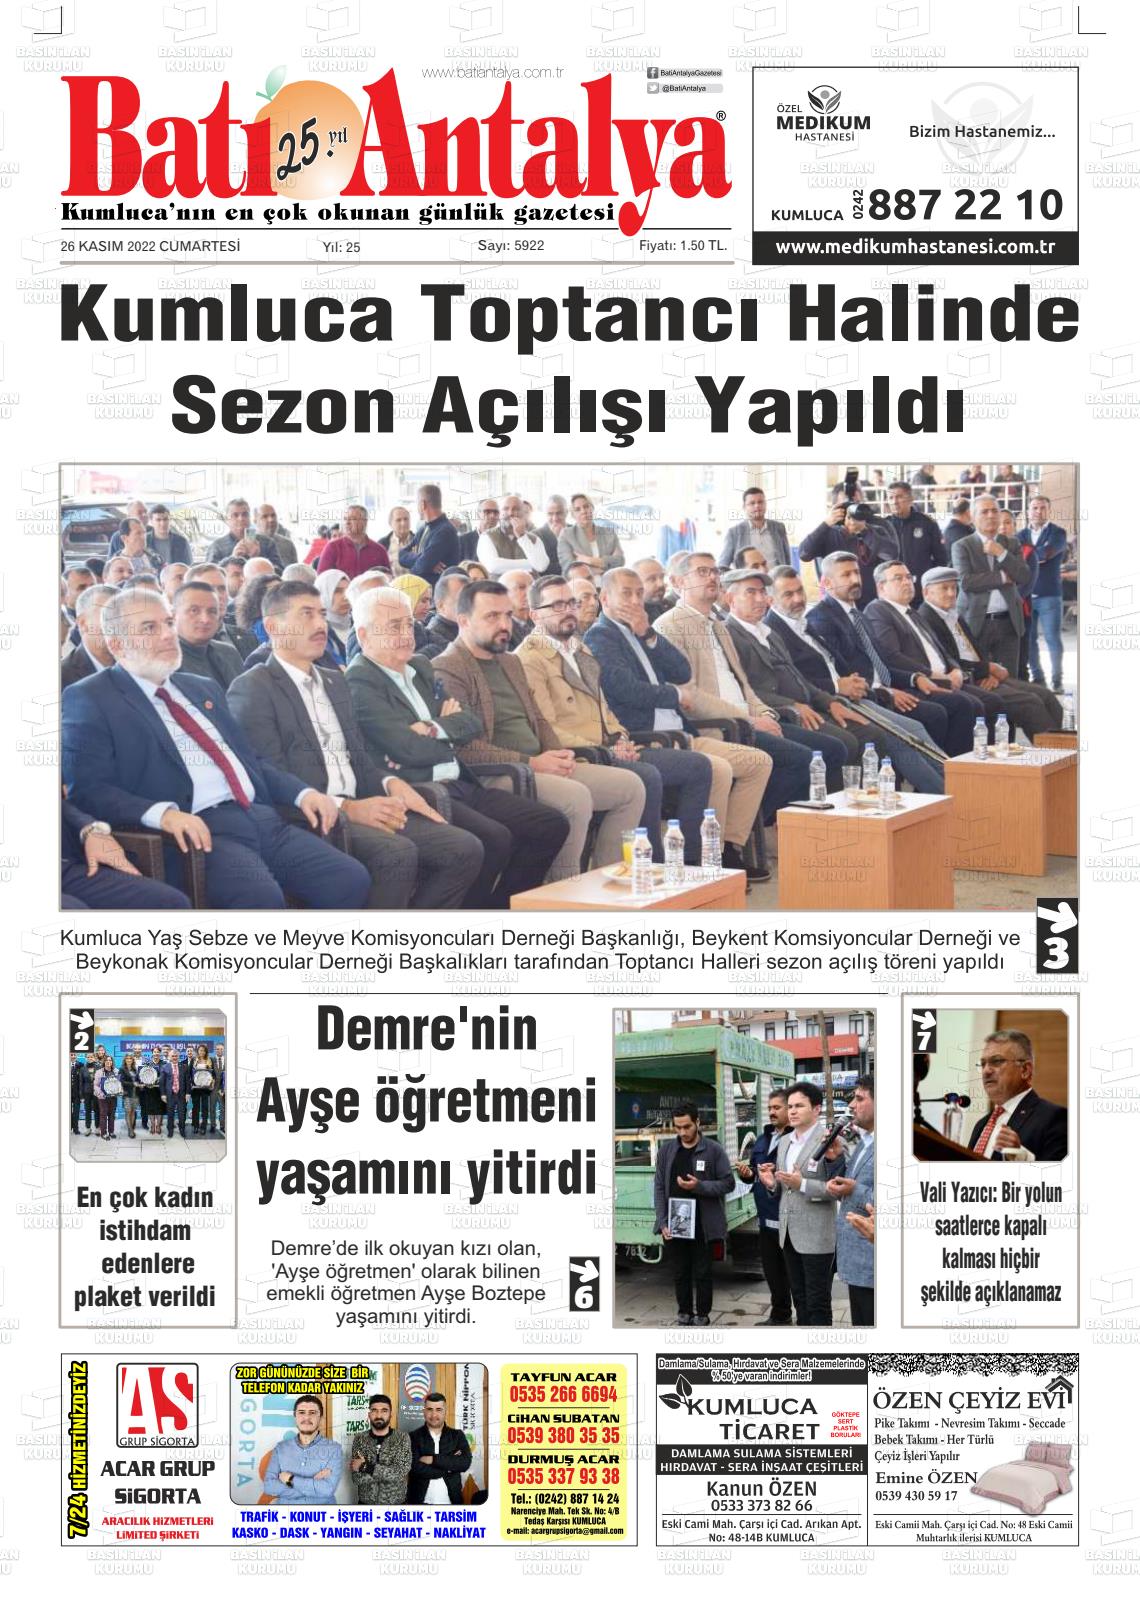 26 Kasım 2022 Batı Antalya Gazete Manşeti